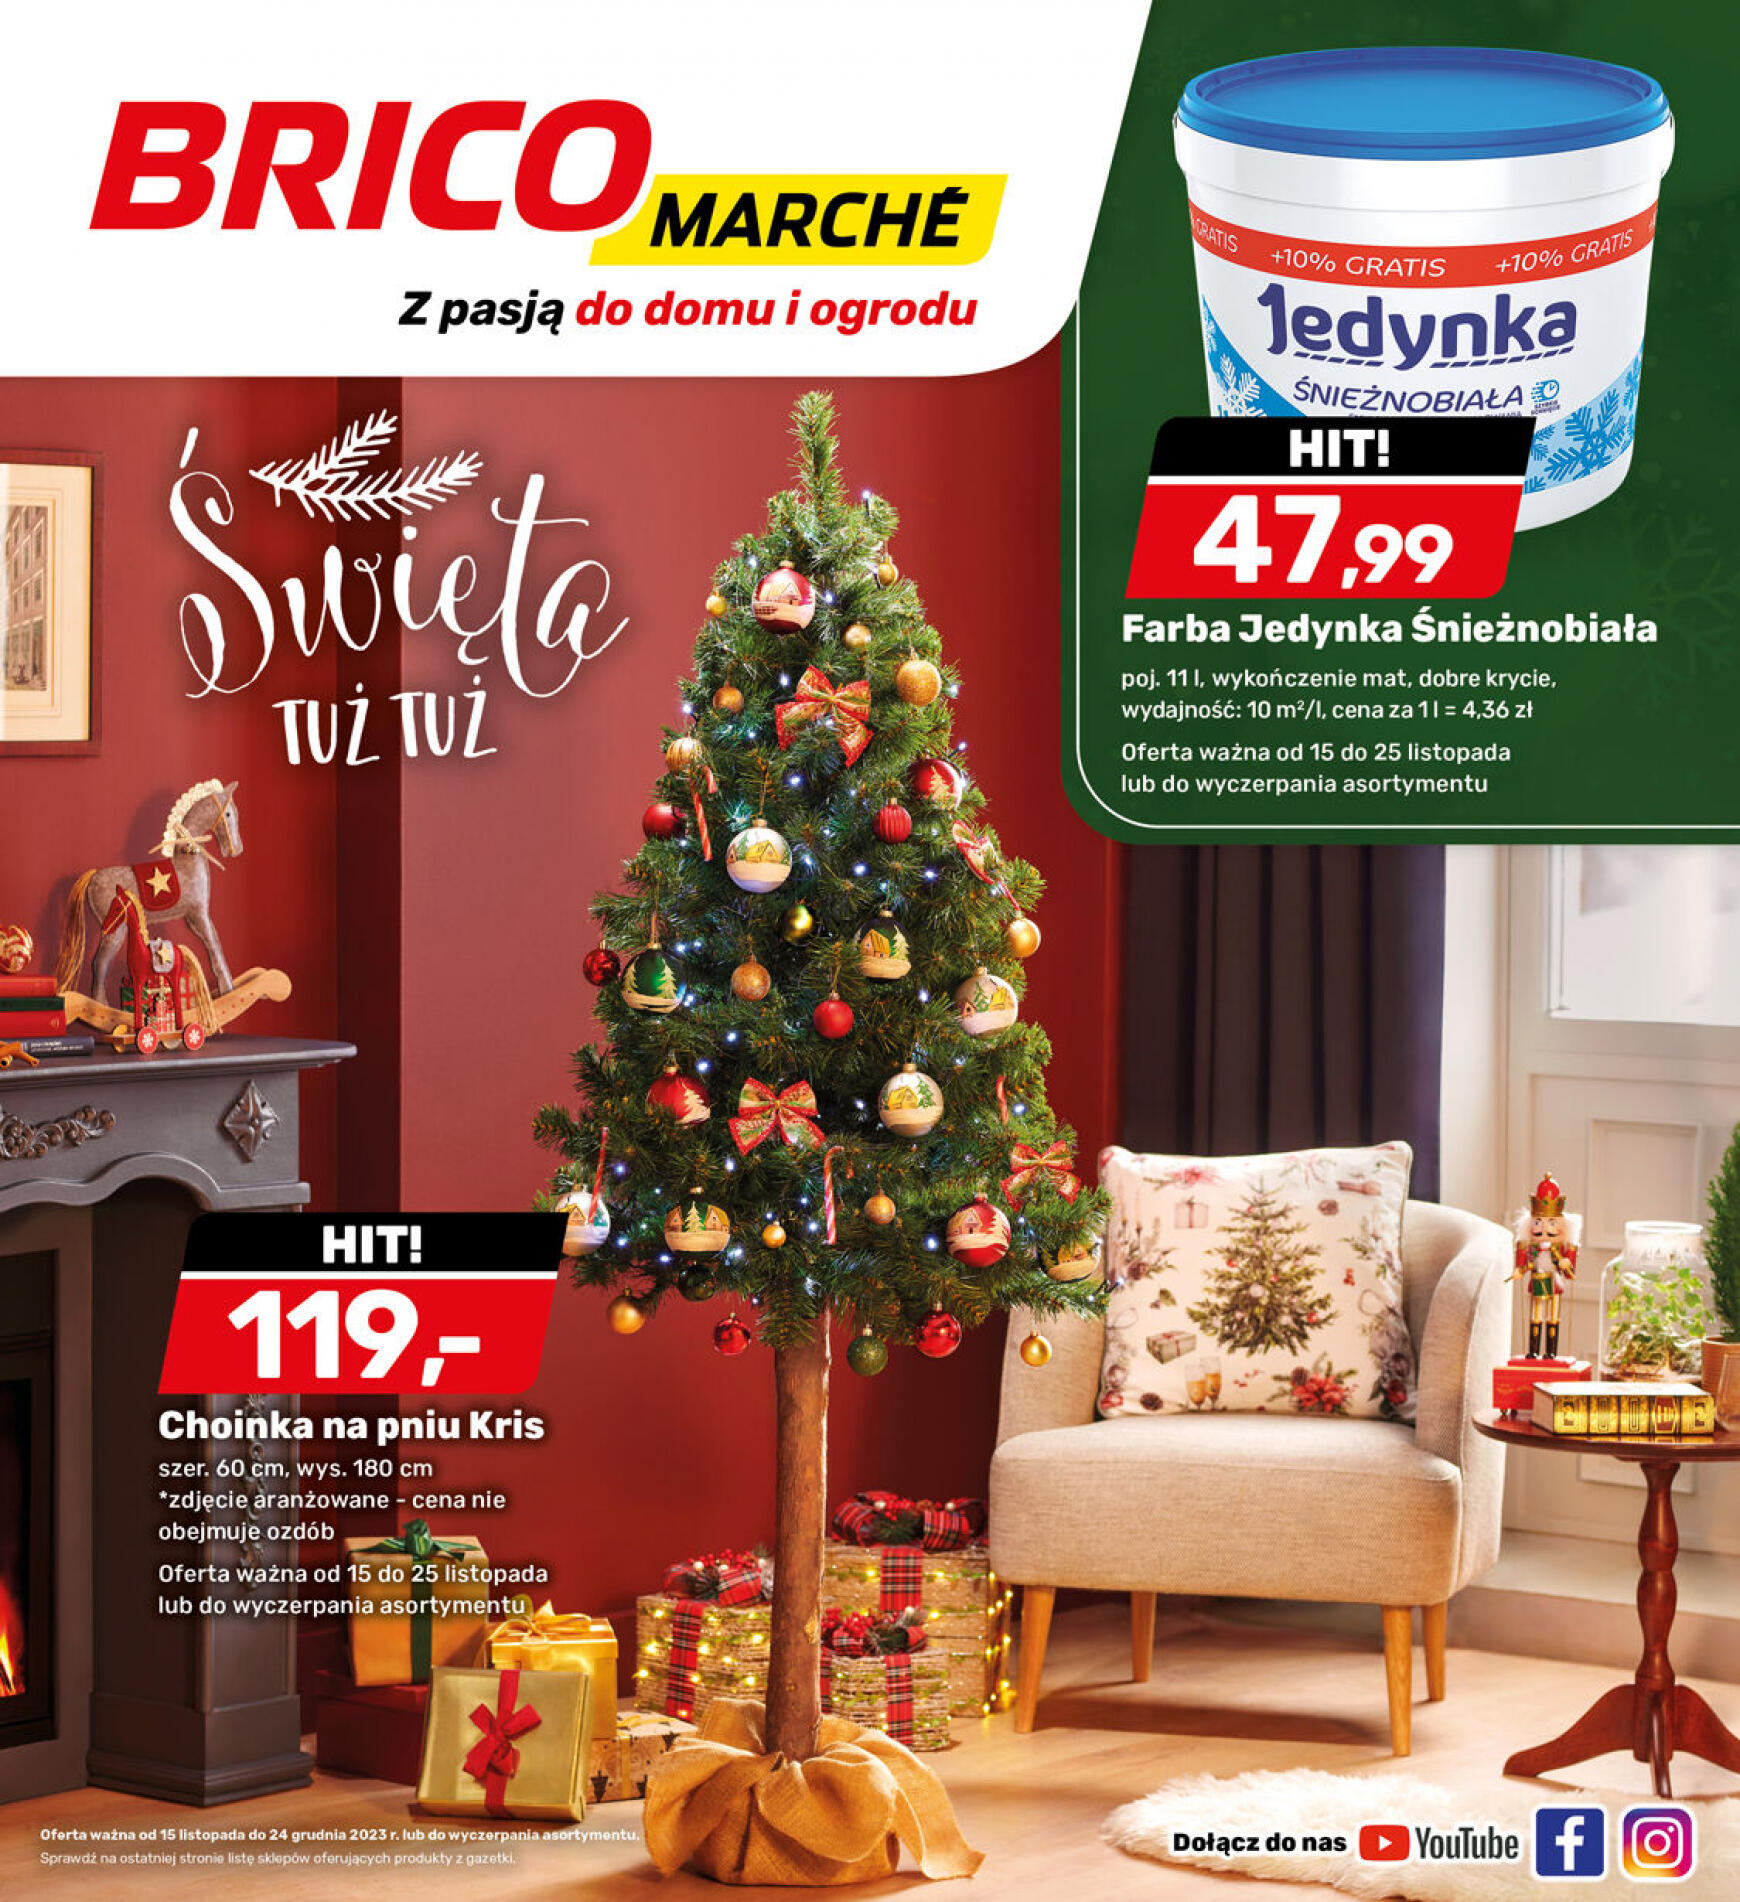 brico-marche - - Bricomarche - page: 2